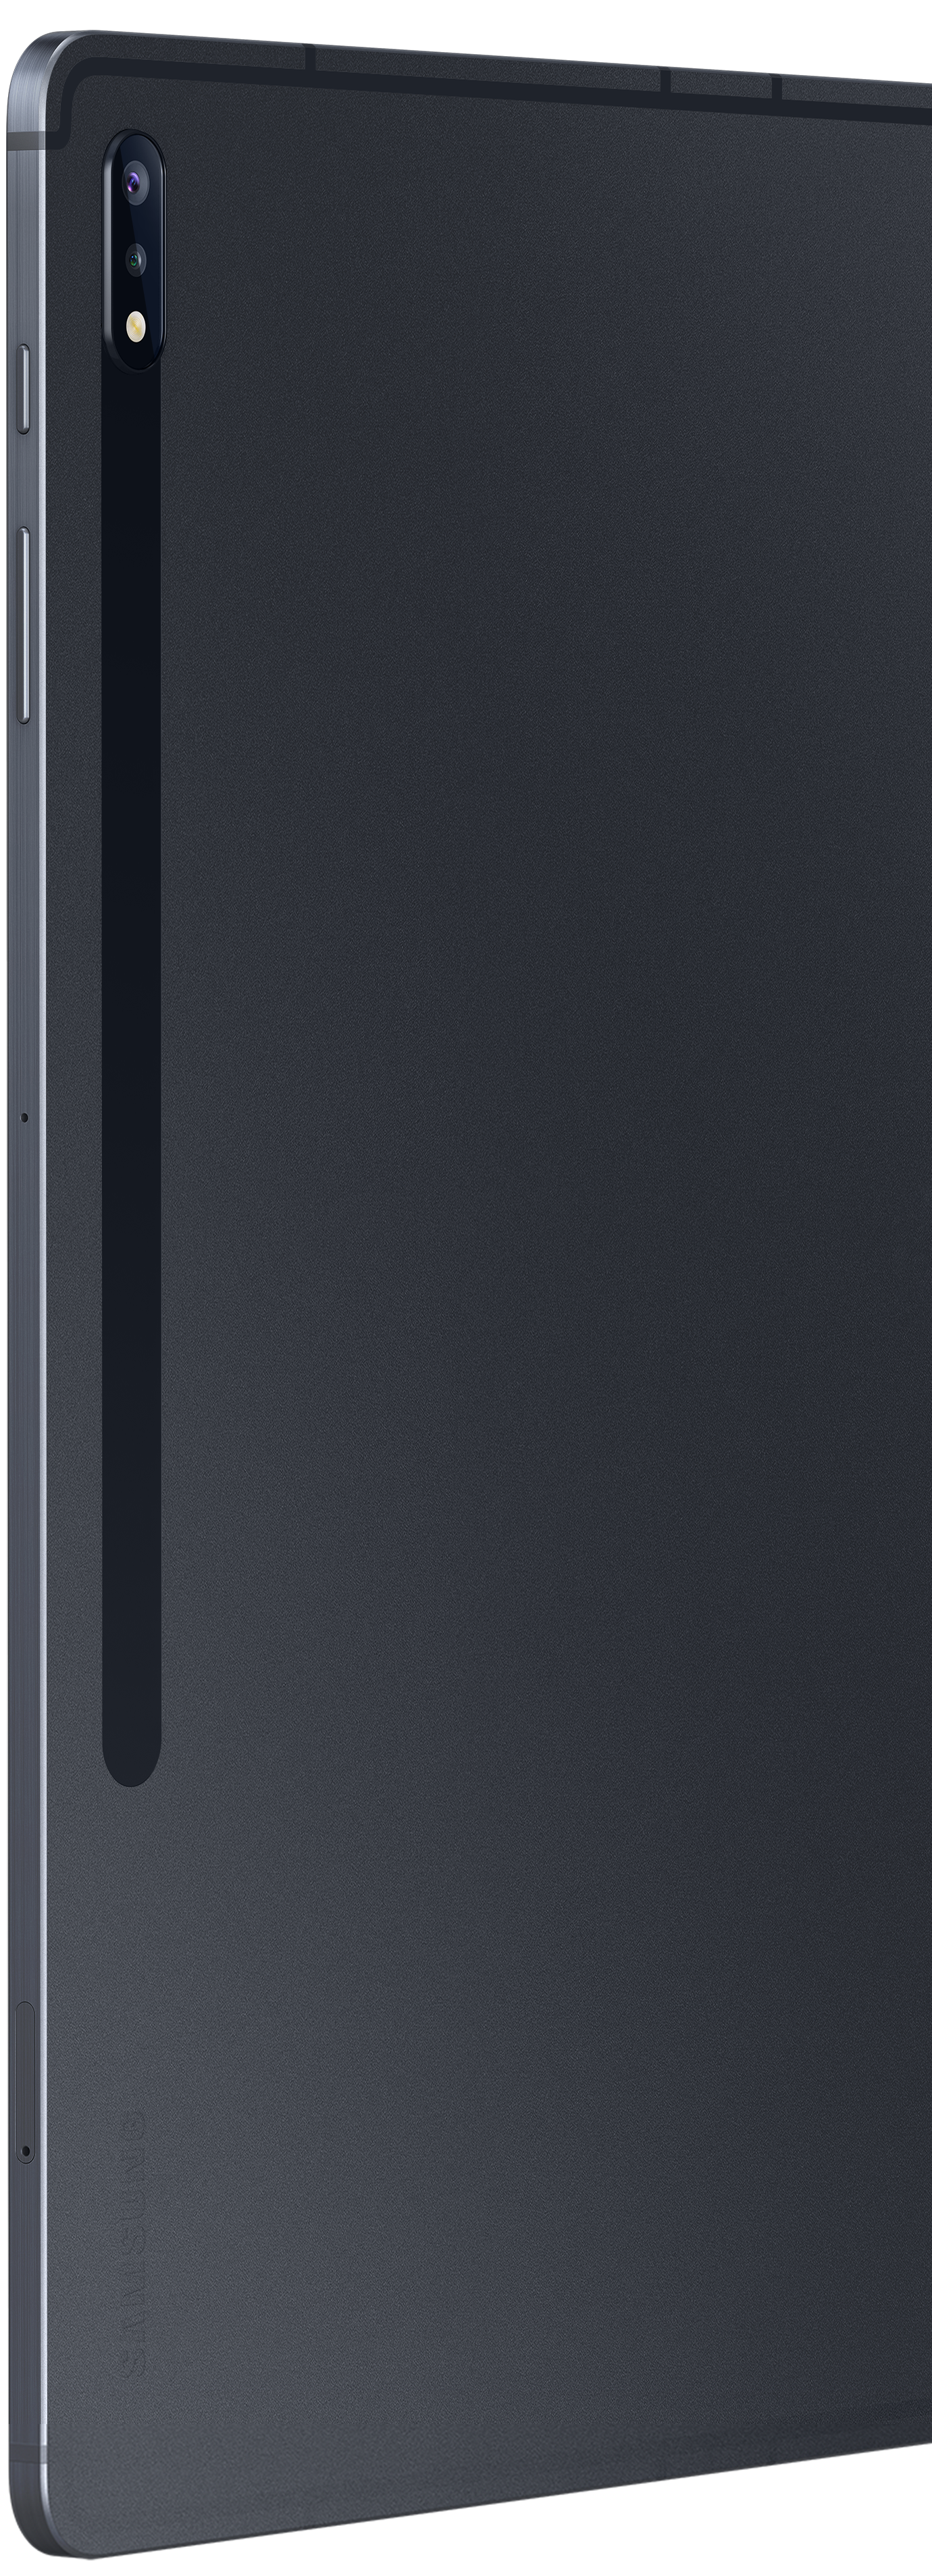 Ansicht von hinten des Galaxy Tab S7+, wo eine Nahaufnahme der Kamera zu sehen ist.